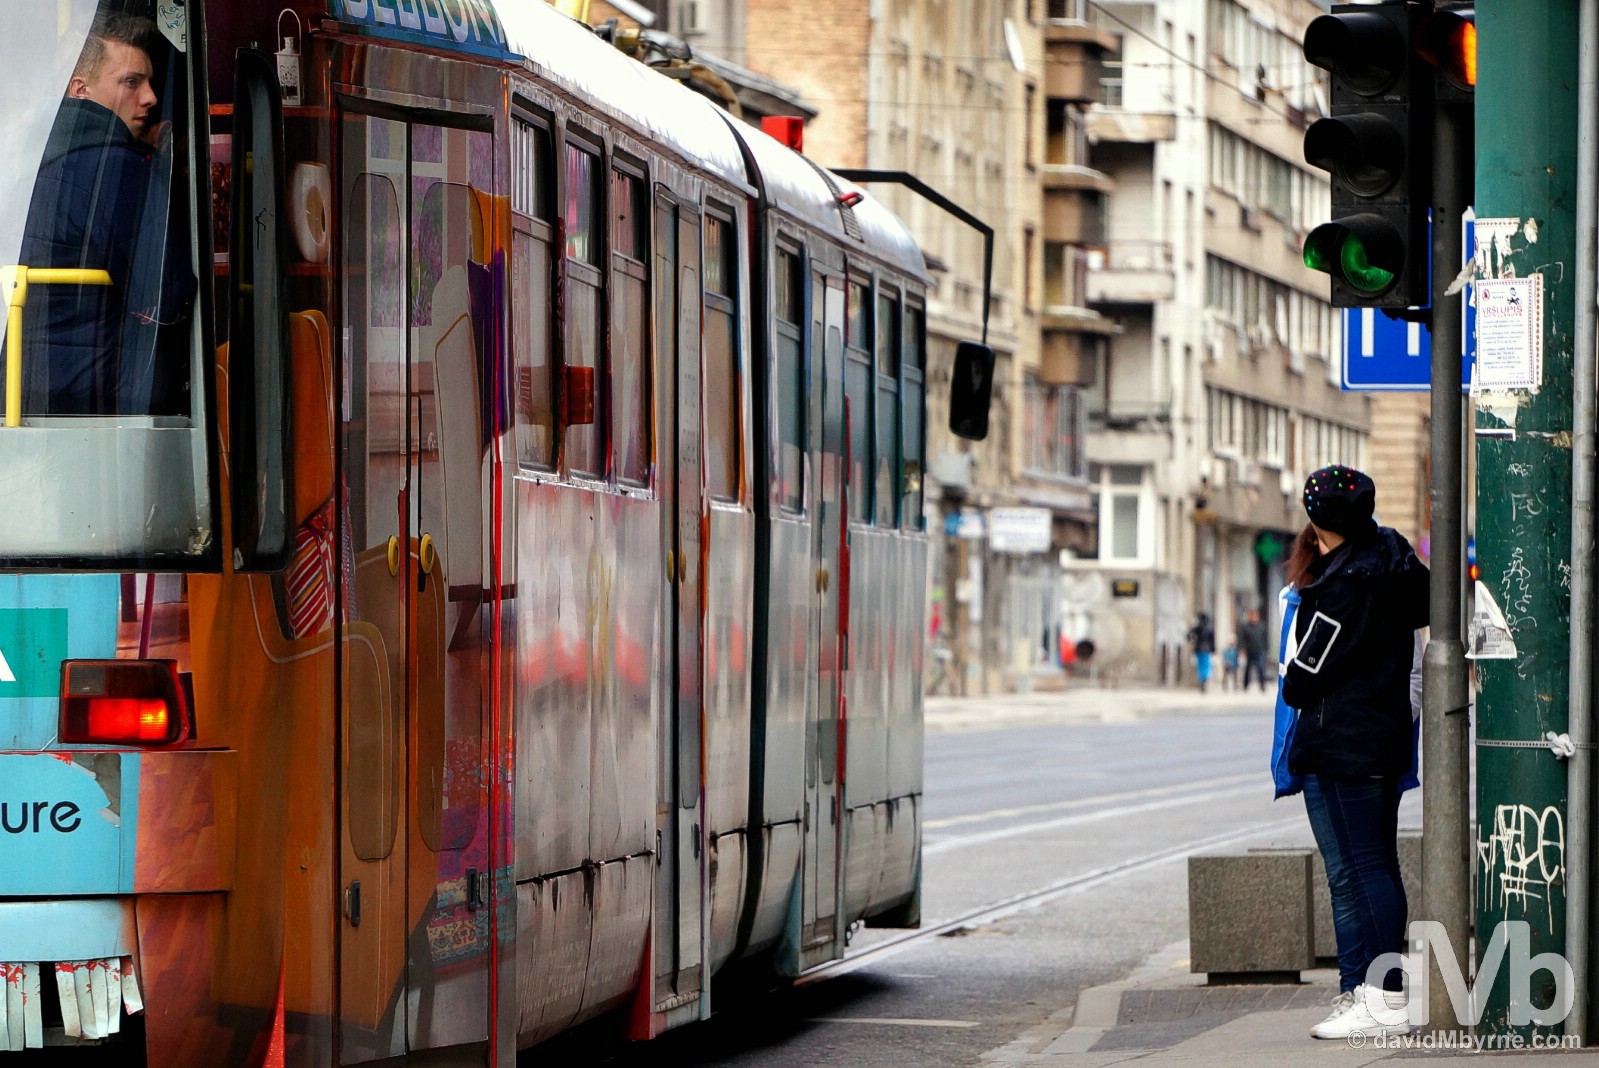 Trams in Sarajevo, Bosnia and Herzegovina. April 4, 2015.